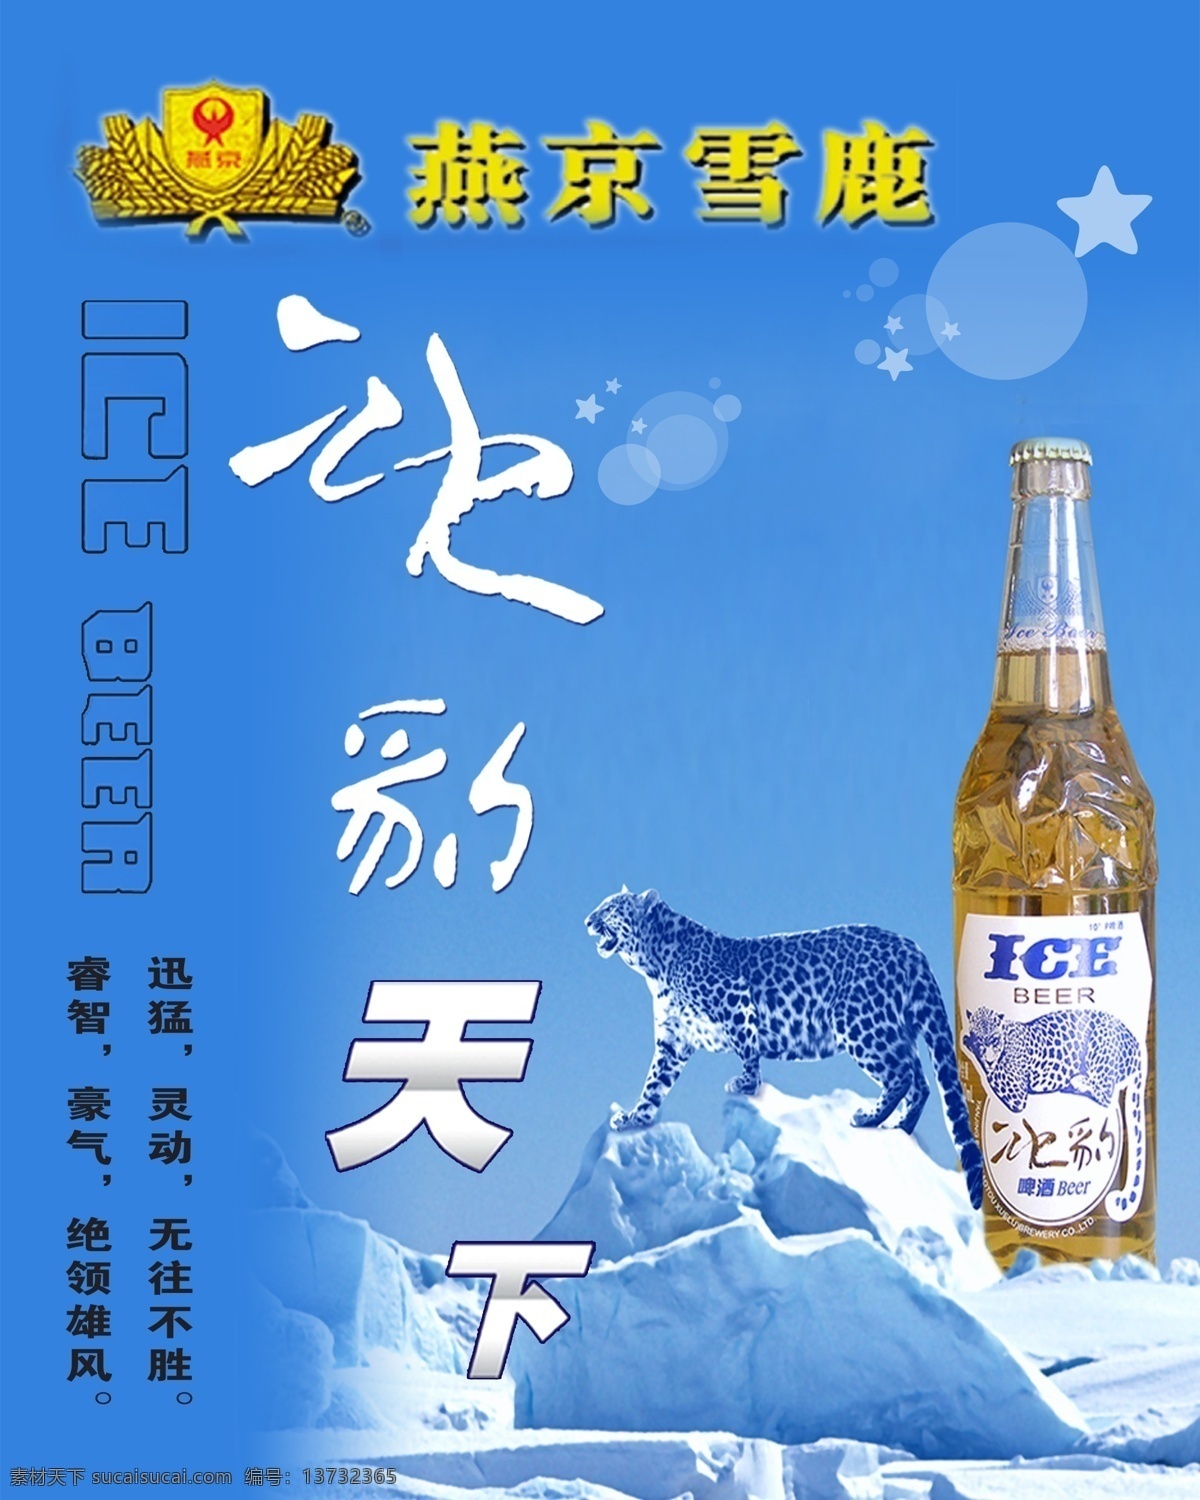 燕京雪鹿啤酒 燕京 雪鹿 啤酒 冰豹 天下 蓝色 背景 ice 冰山 模板 创意 冰箱 冰箱贴 兰 分层 源文件